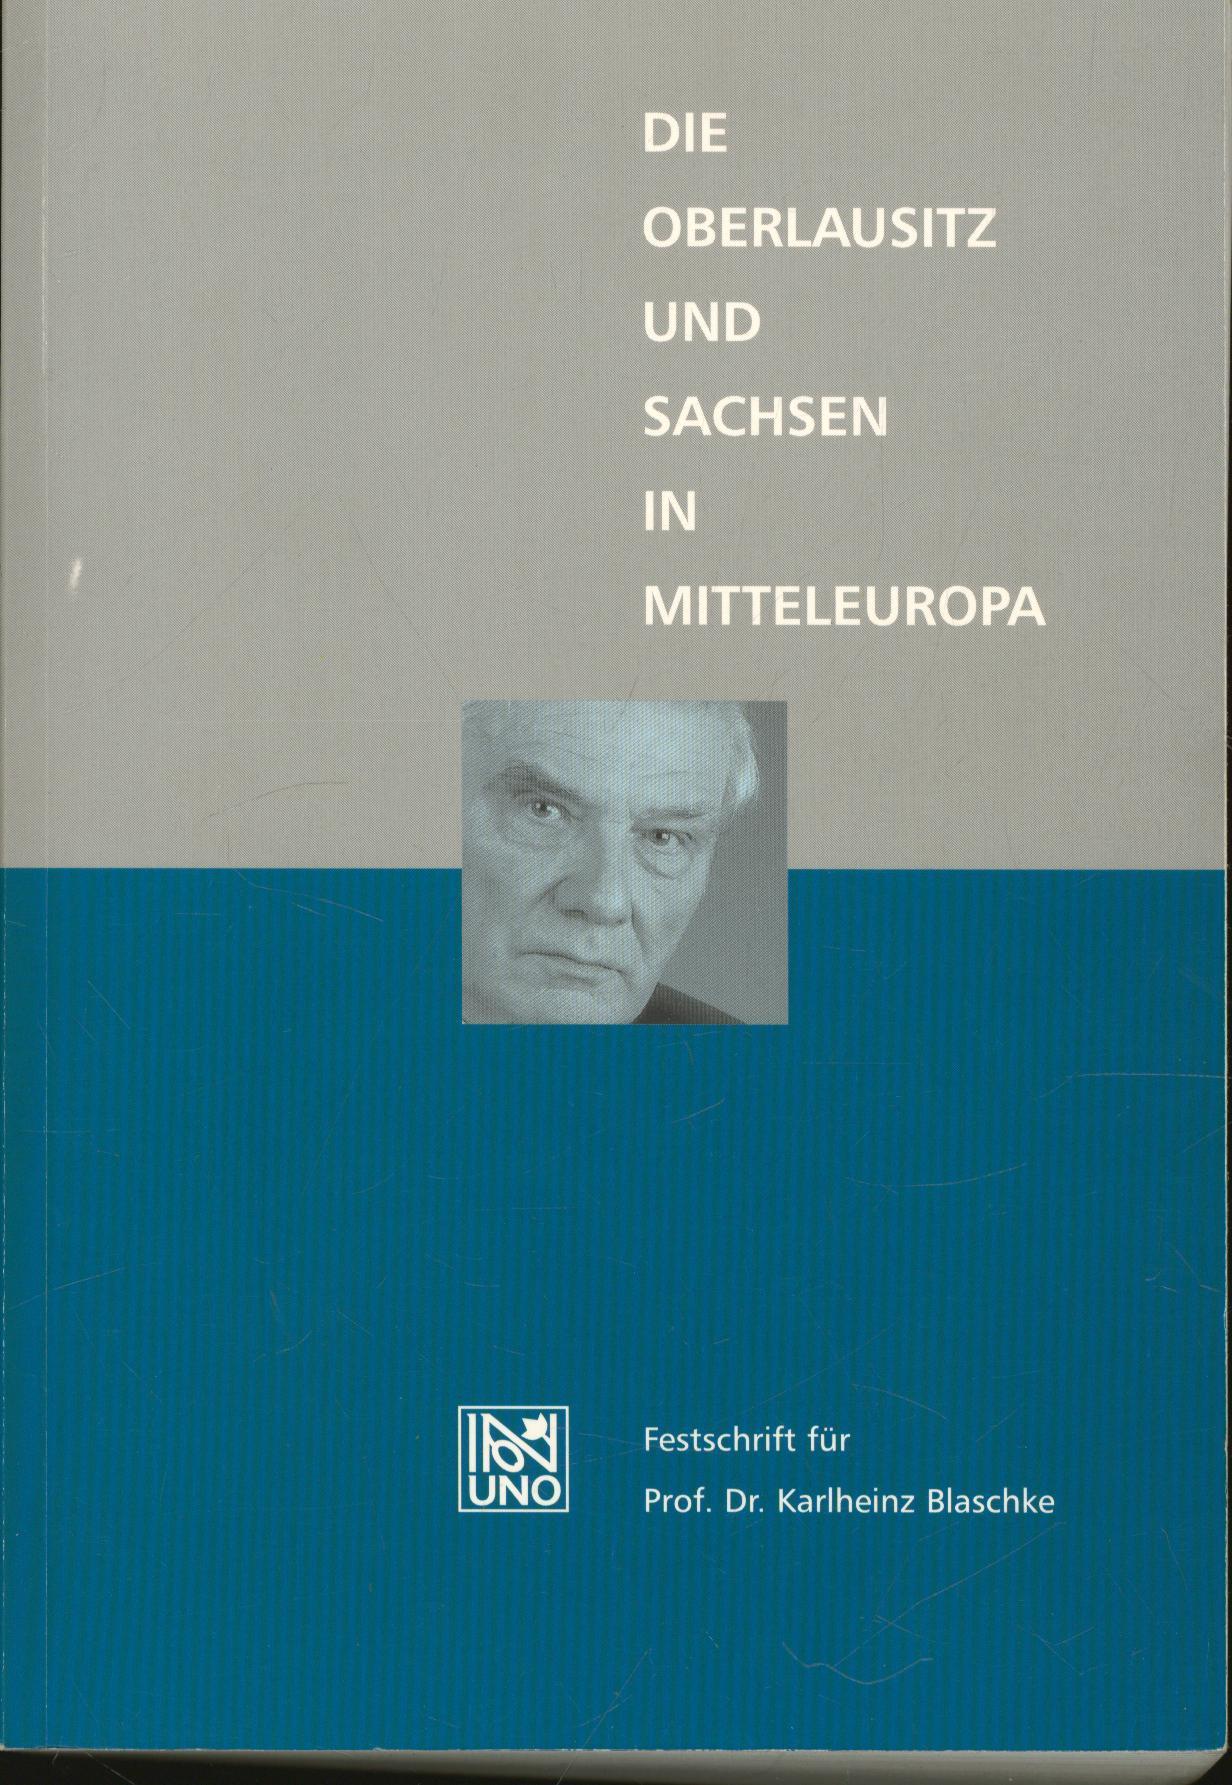 Die Oberlausitz und Sachsen in Mitteleuropa: Festschrift für Prof. Dr. Karlheinz Blaschke